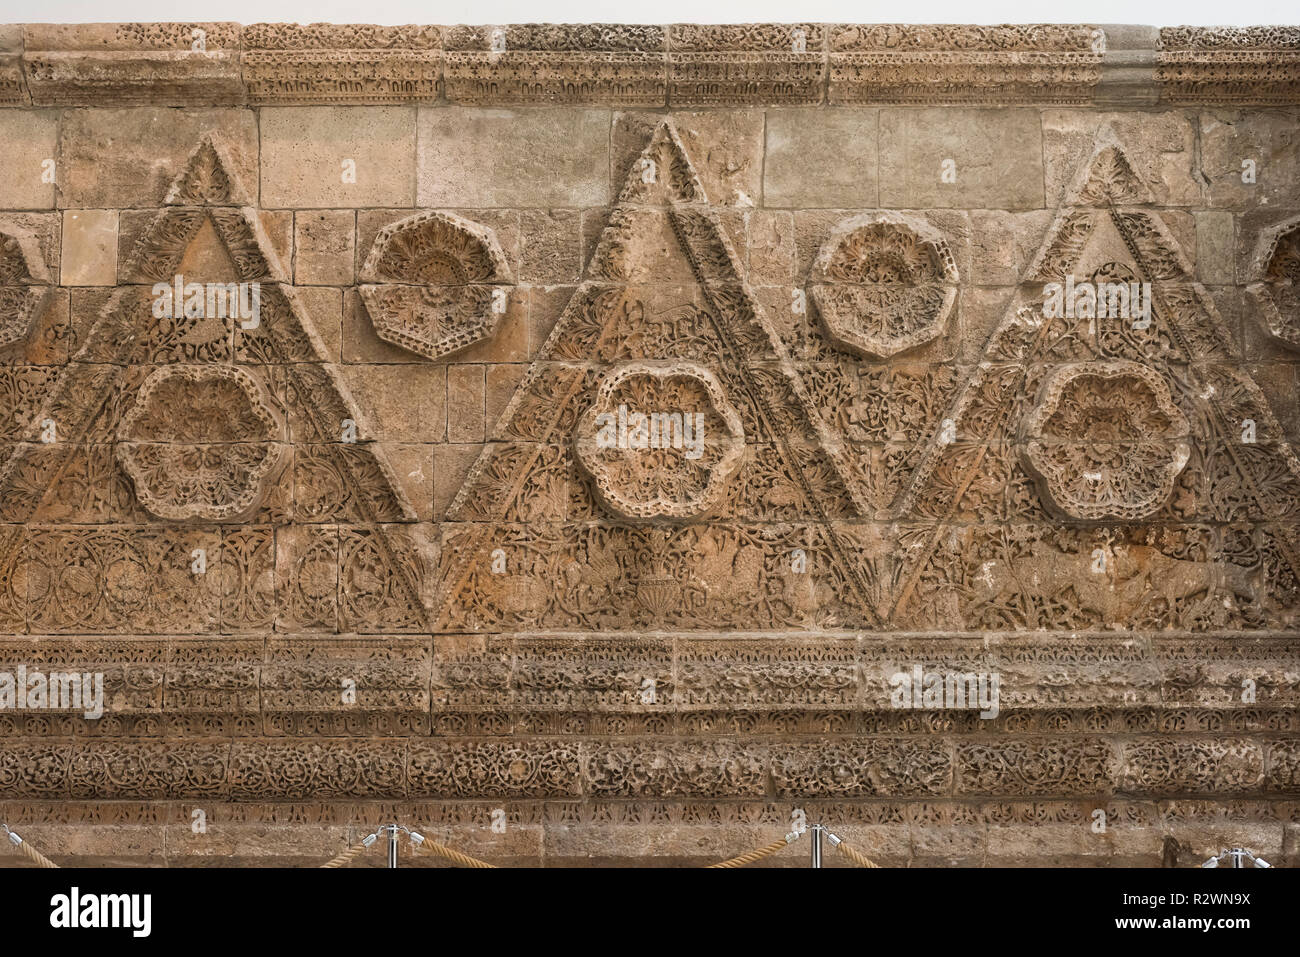 Berlin. Deutschland. Pergamon Museum. Die Mshatta Fassade, Teil einer eingerichteten Wüste schloss Wand von einem Palast der Umayyaden Qasr Al-Mshatta, in Jorda gebaut Stockfoto